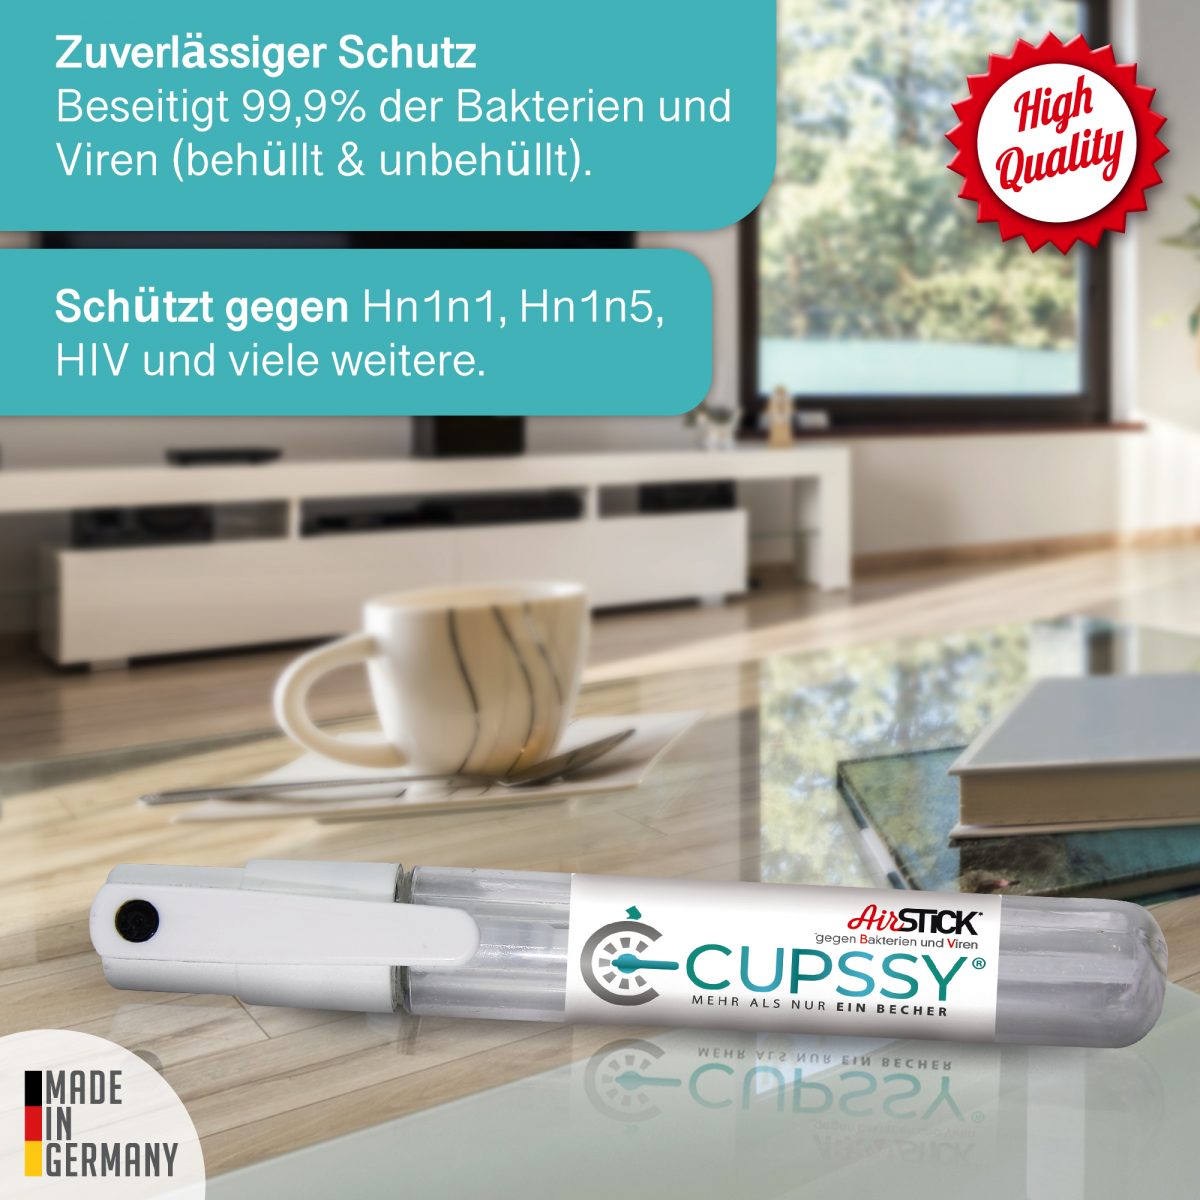 Cupssy Airstick Desinfektionsspray für Hände und Oberflächen, nächfüllbar